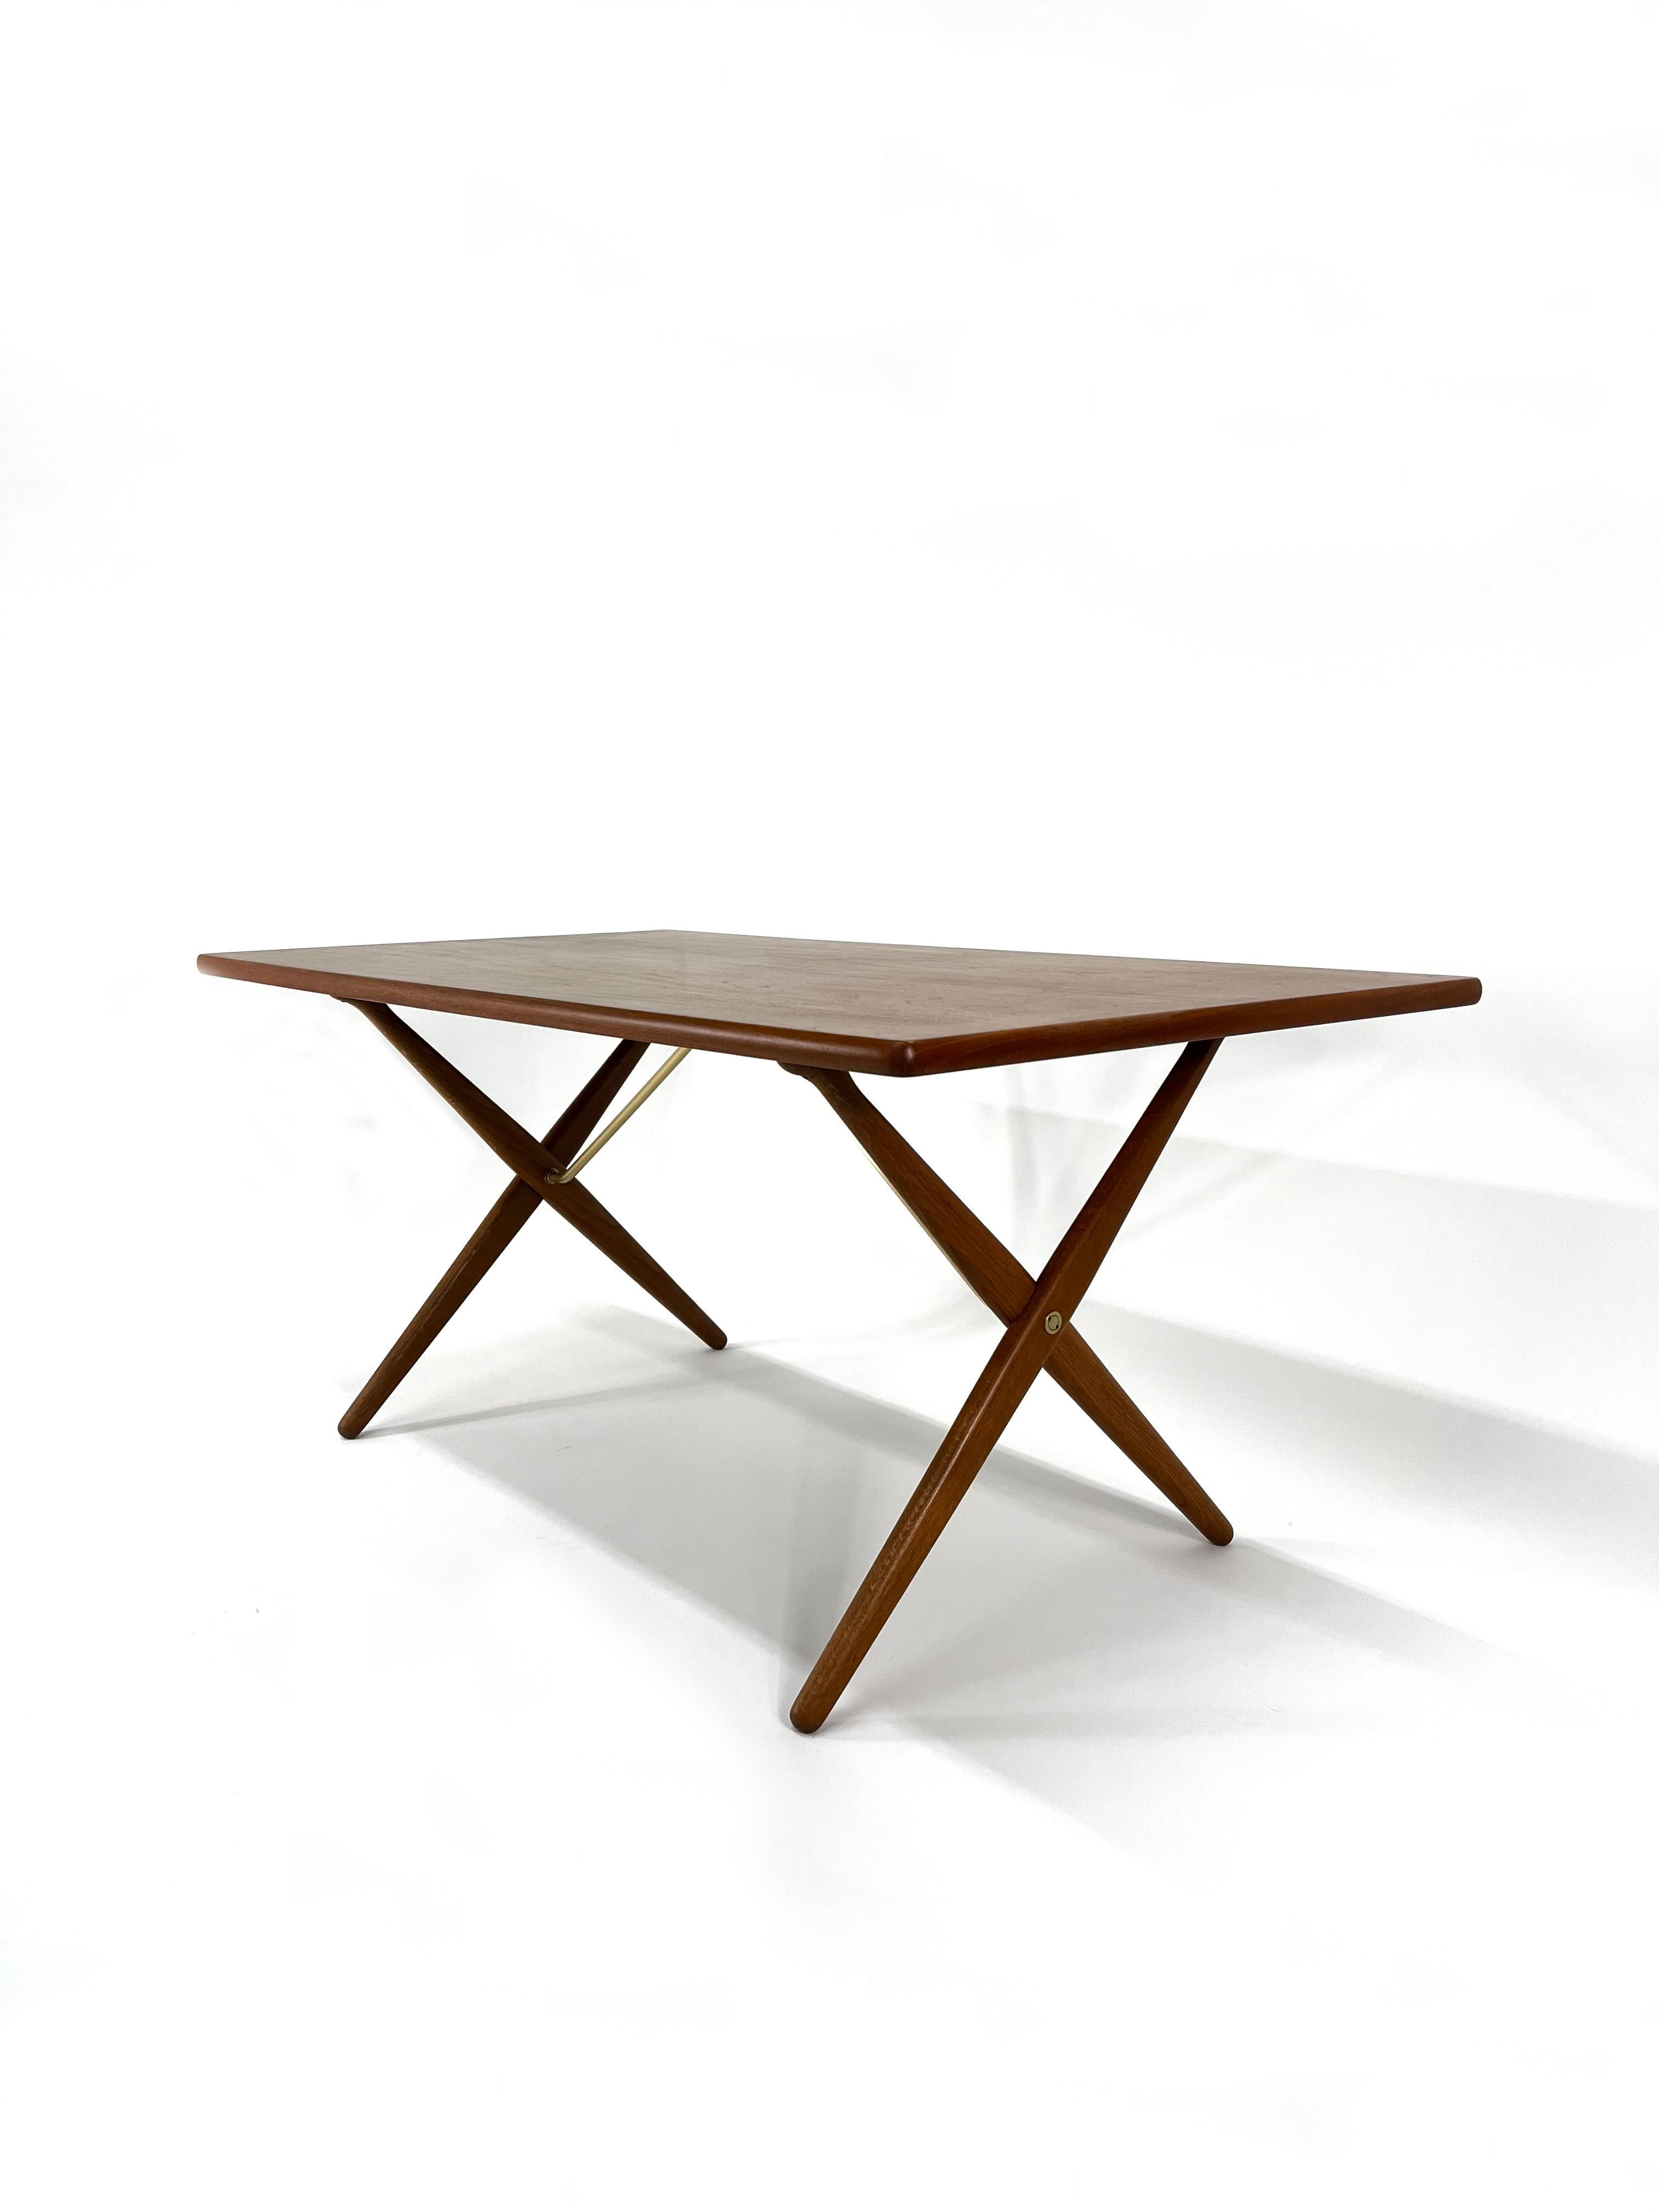 Cette magnifique table de salle à manger à pieds croisés, conçue par Hans J. Wegner pour Andreas Tuck, en teck, chêne et laiton, est également connue sous le nom de table Sabre.  Wegner a conçu cette pièce magnifique et fonctionnelle qui est très